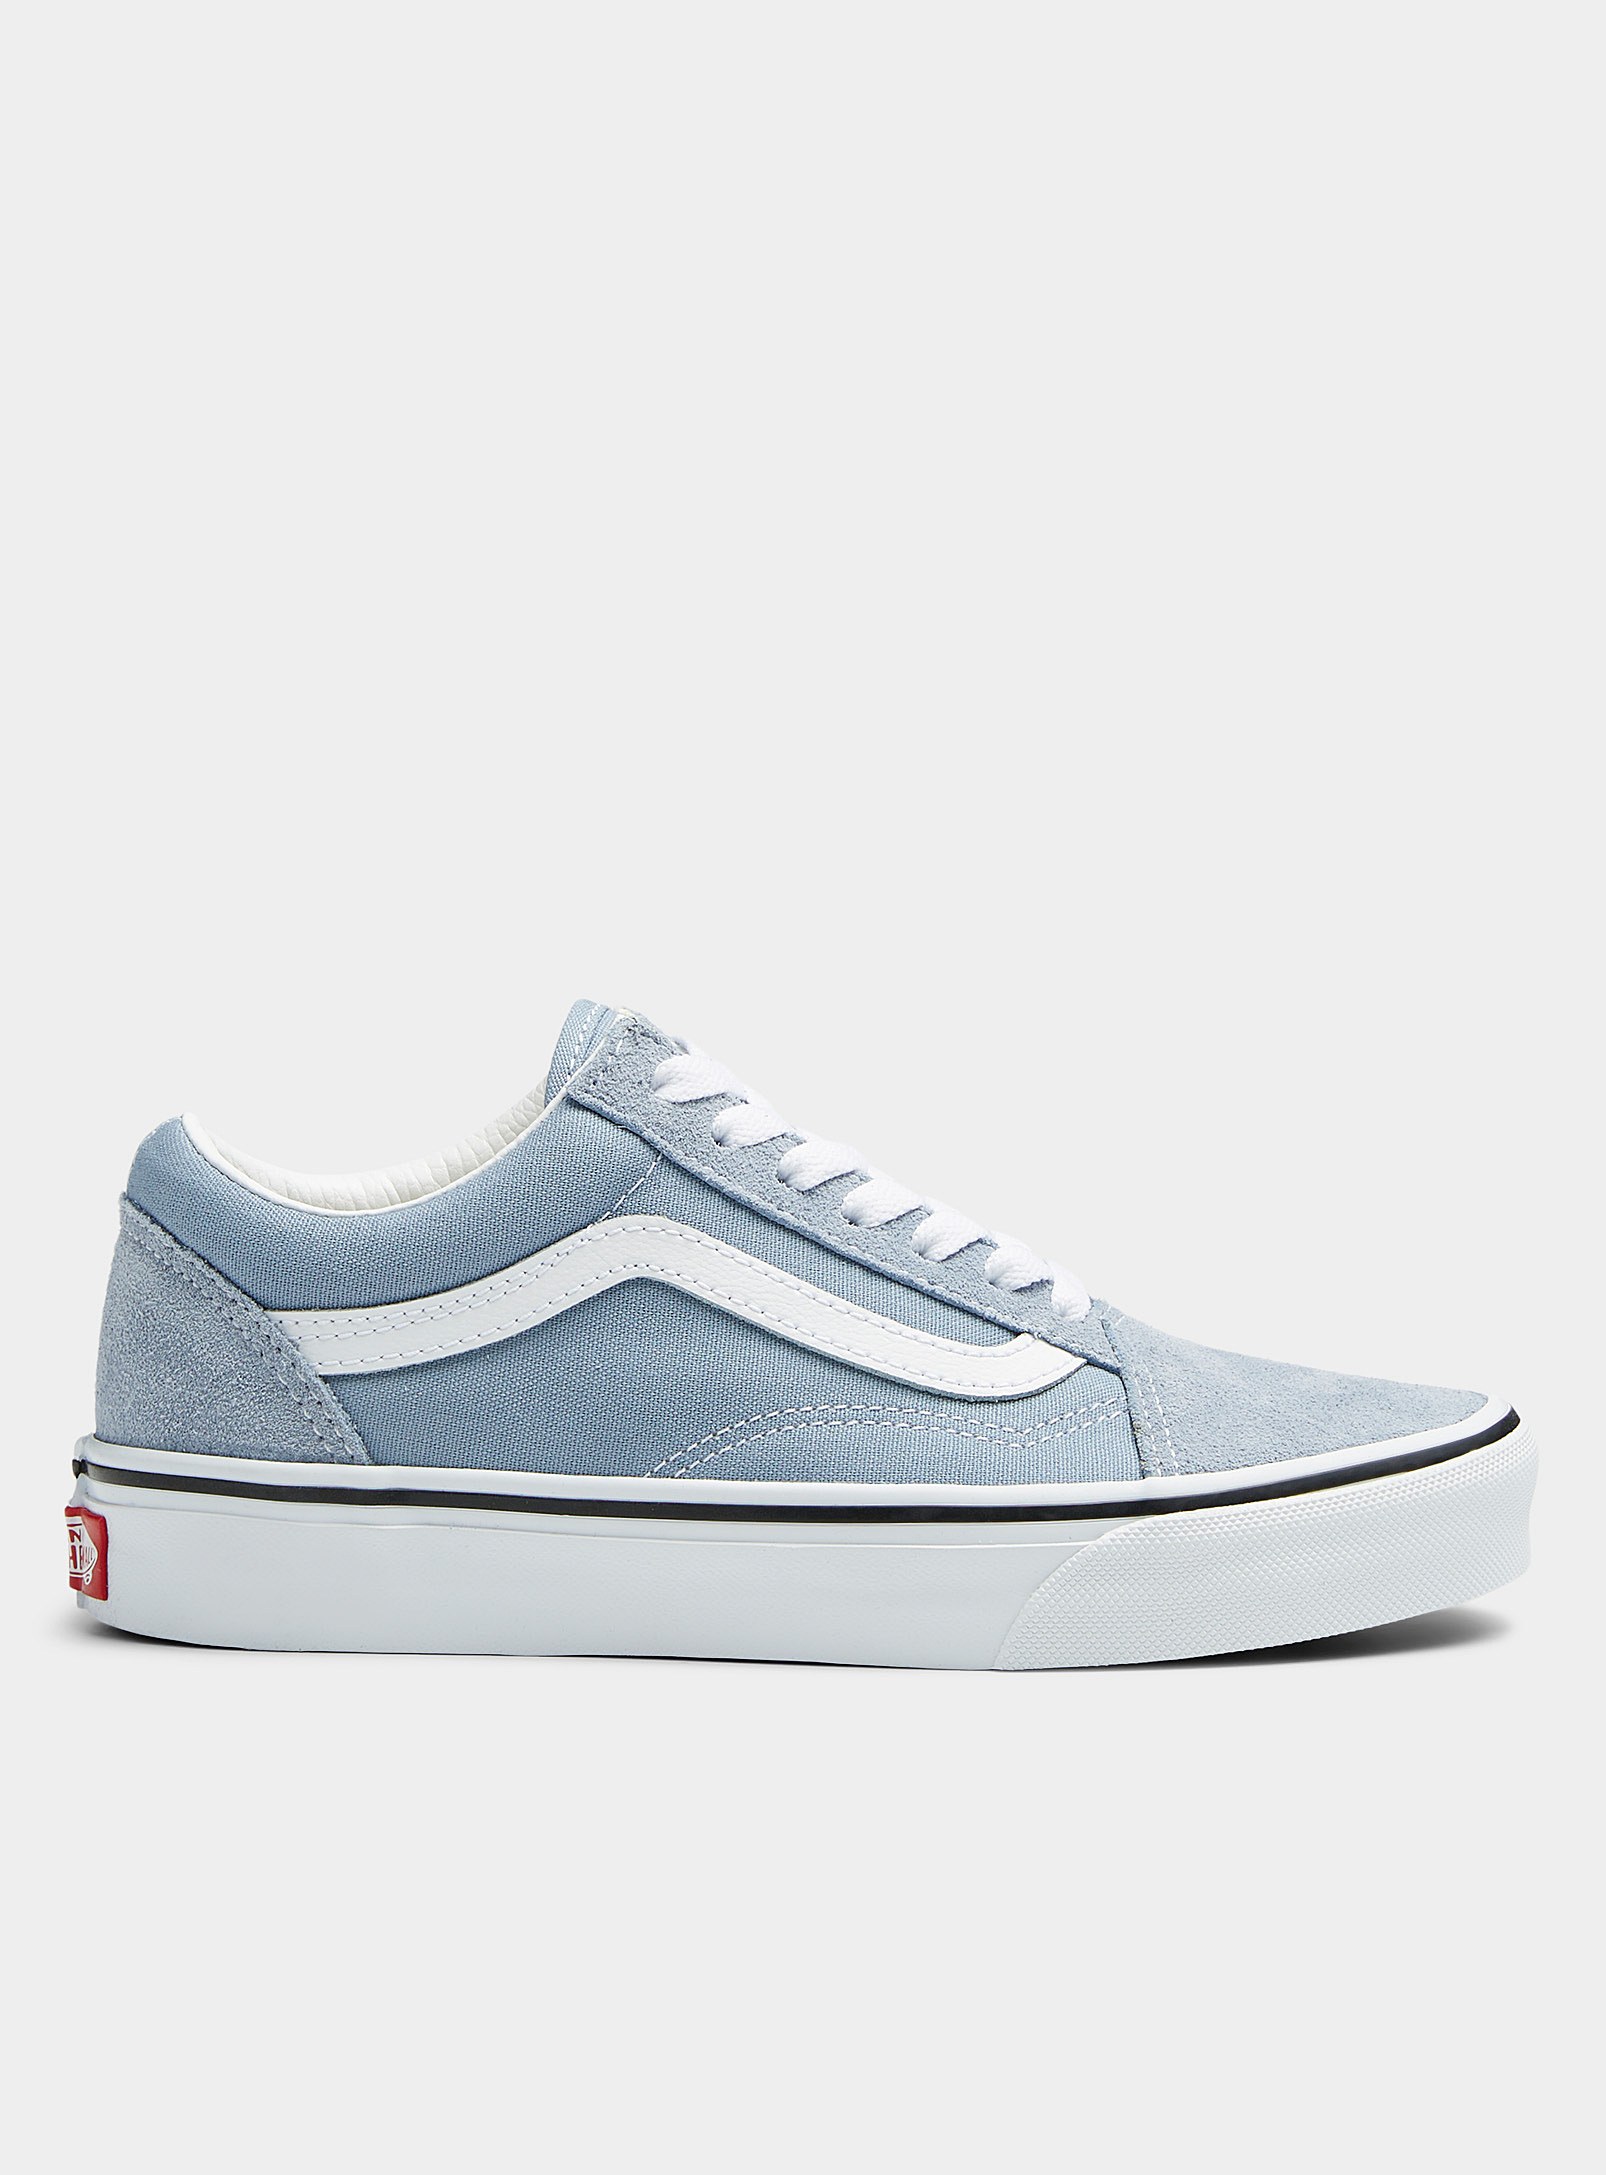 Vans - Women's Old Skool dusty blue sneakers Women